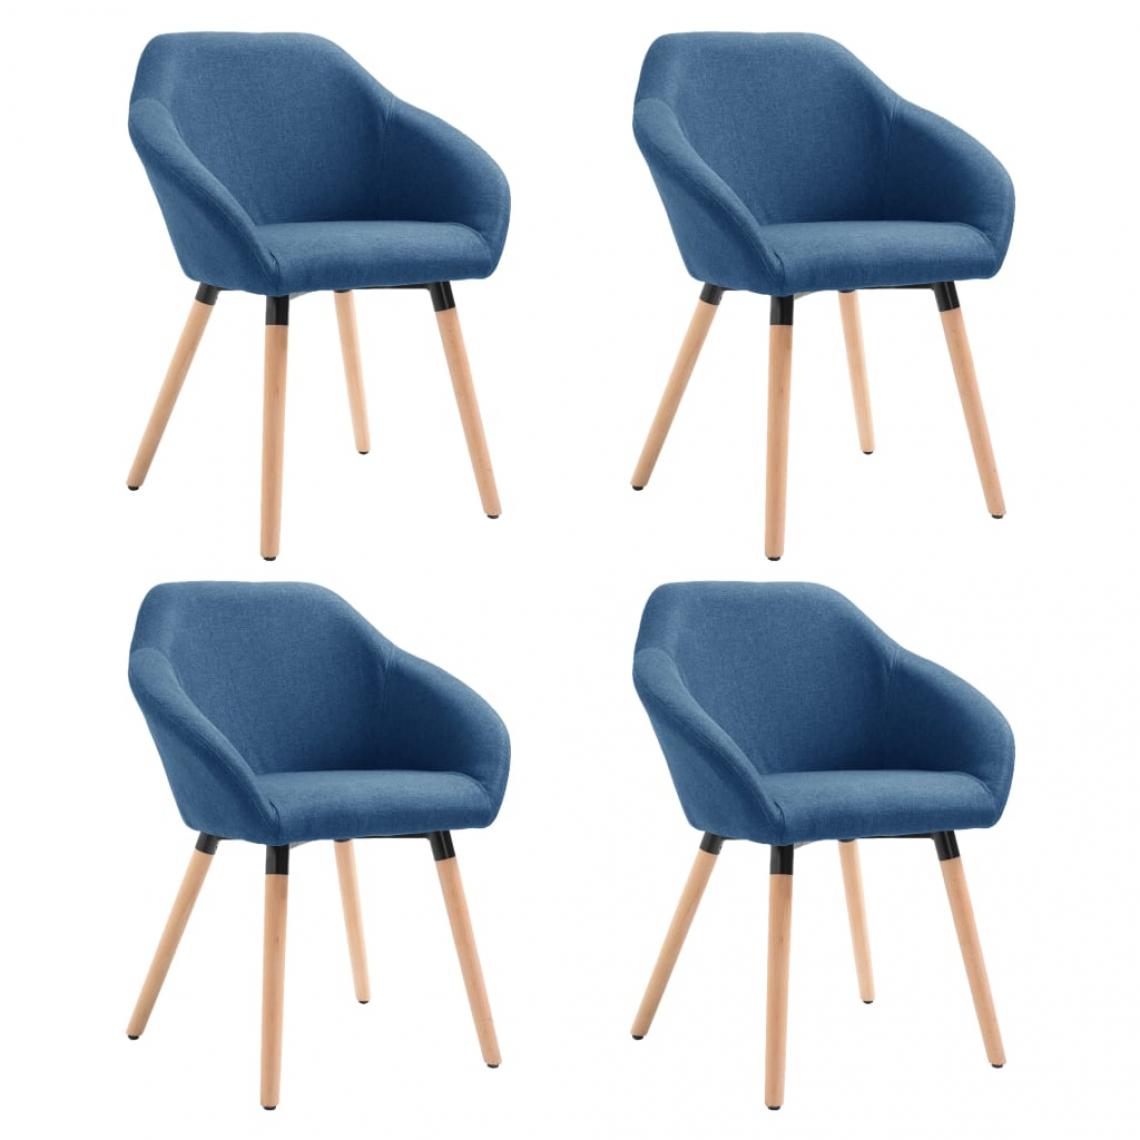 Decoshop26 - Lot de 4 chaises de salle à manger cuisine design moderne tissu bleu CDS021283 - Chaises